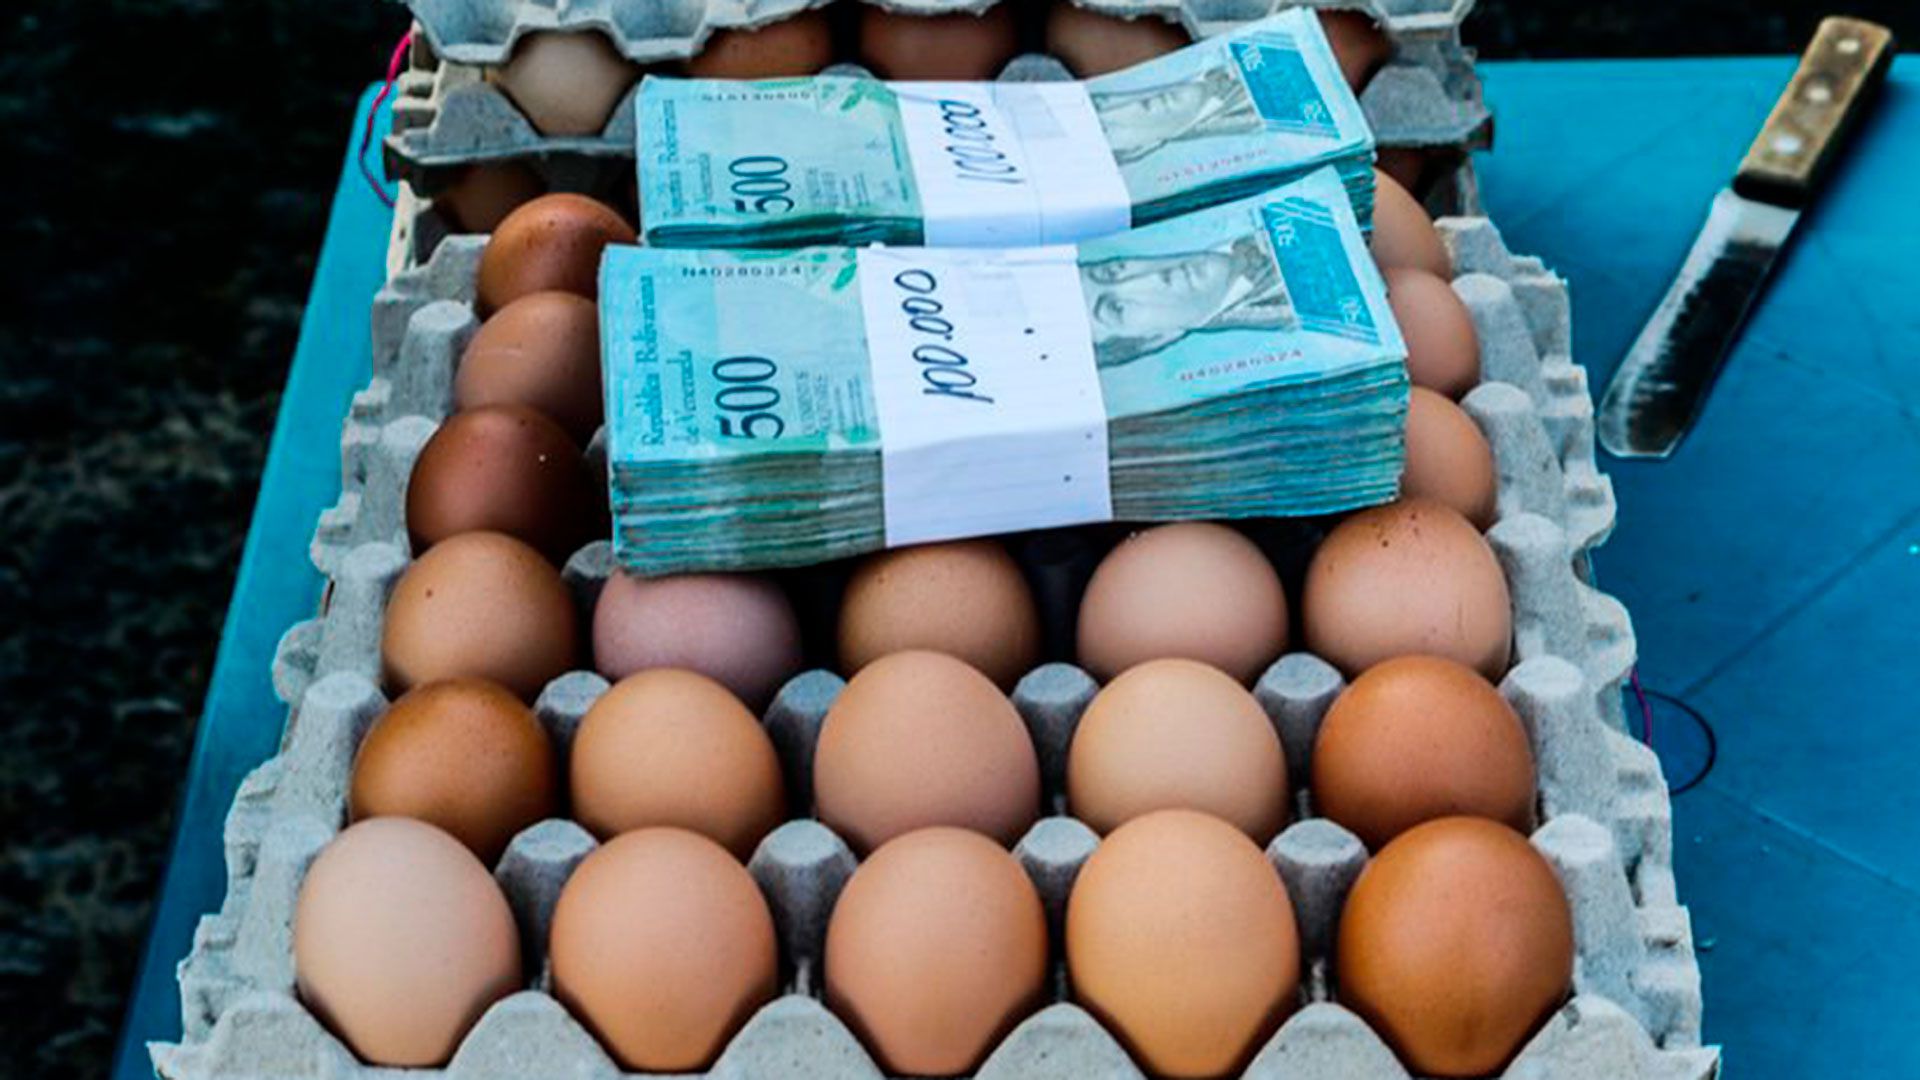 Hoy el billete de mayor valor es el de 500 bolívares; sin embargo, un huevo en Venezuela cuesta 900